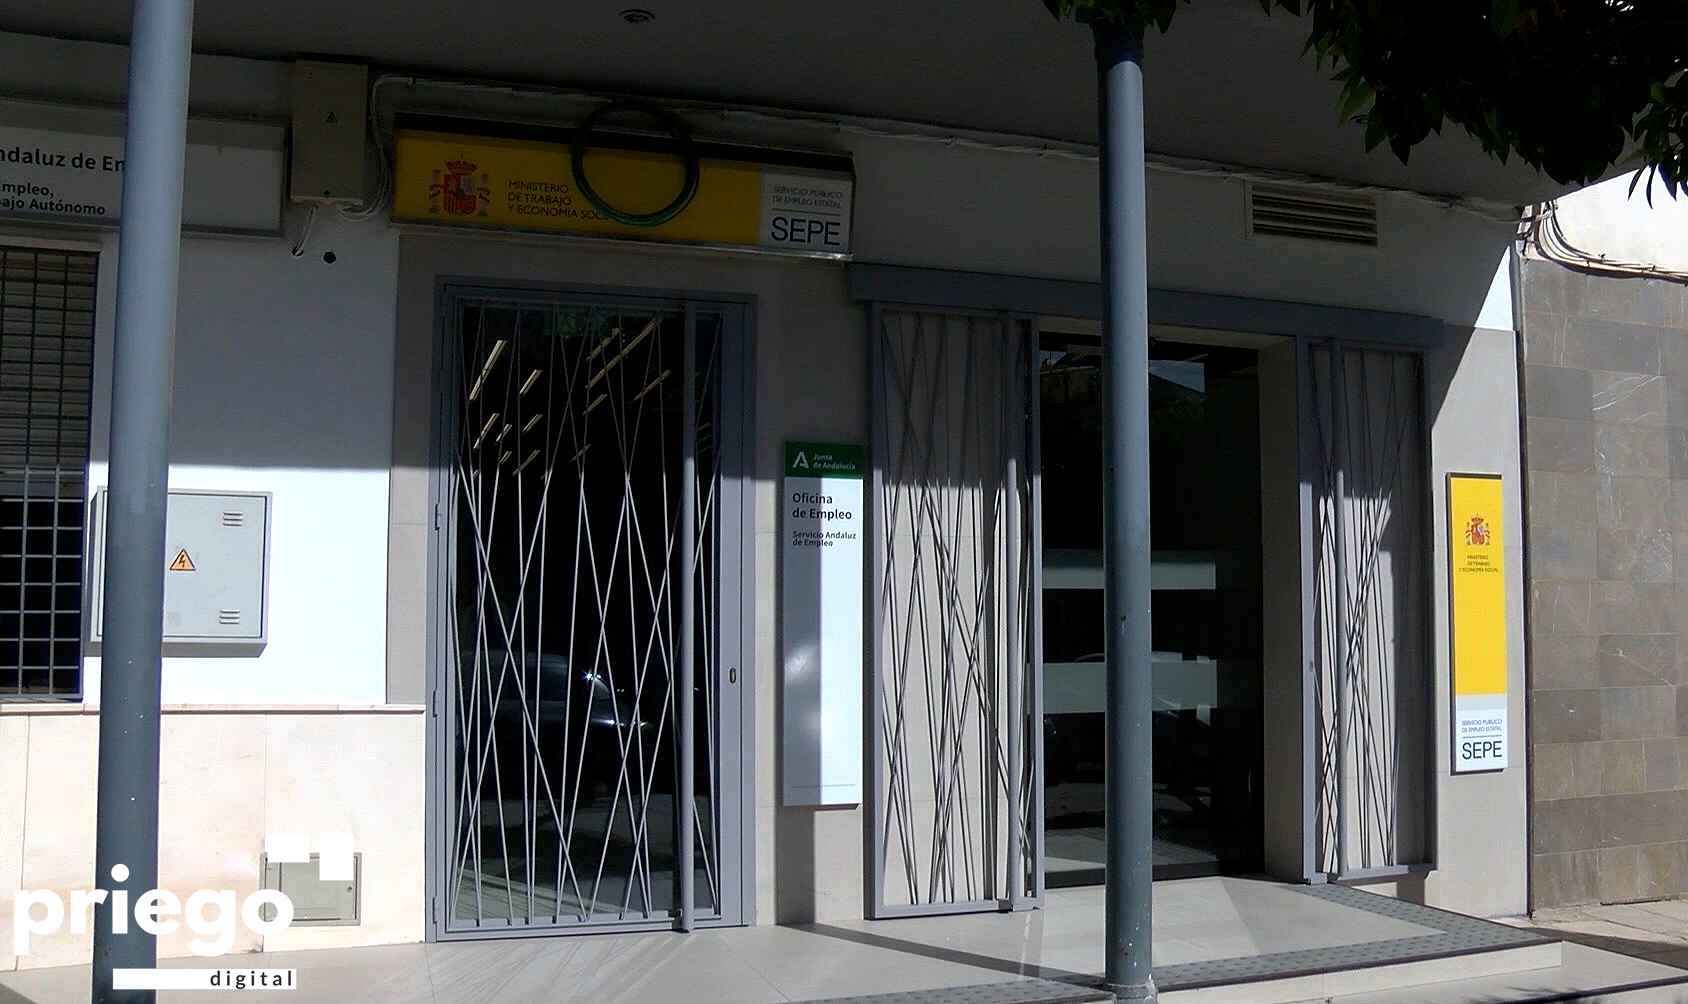 Oficina del Servicio Andaluz de Empleo en Priego.